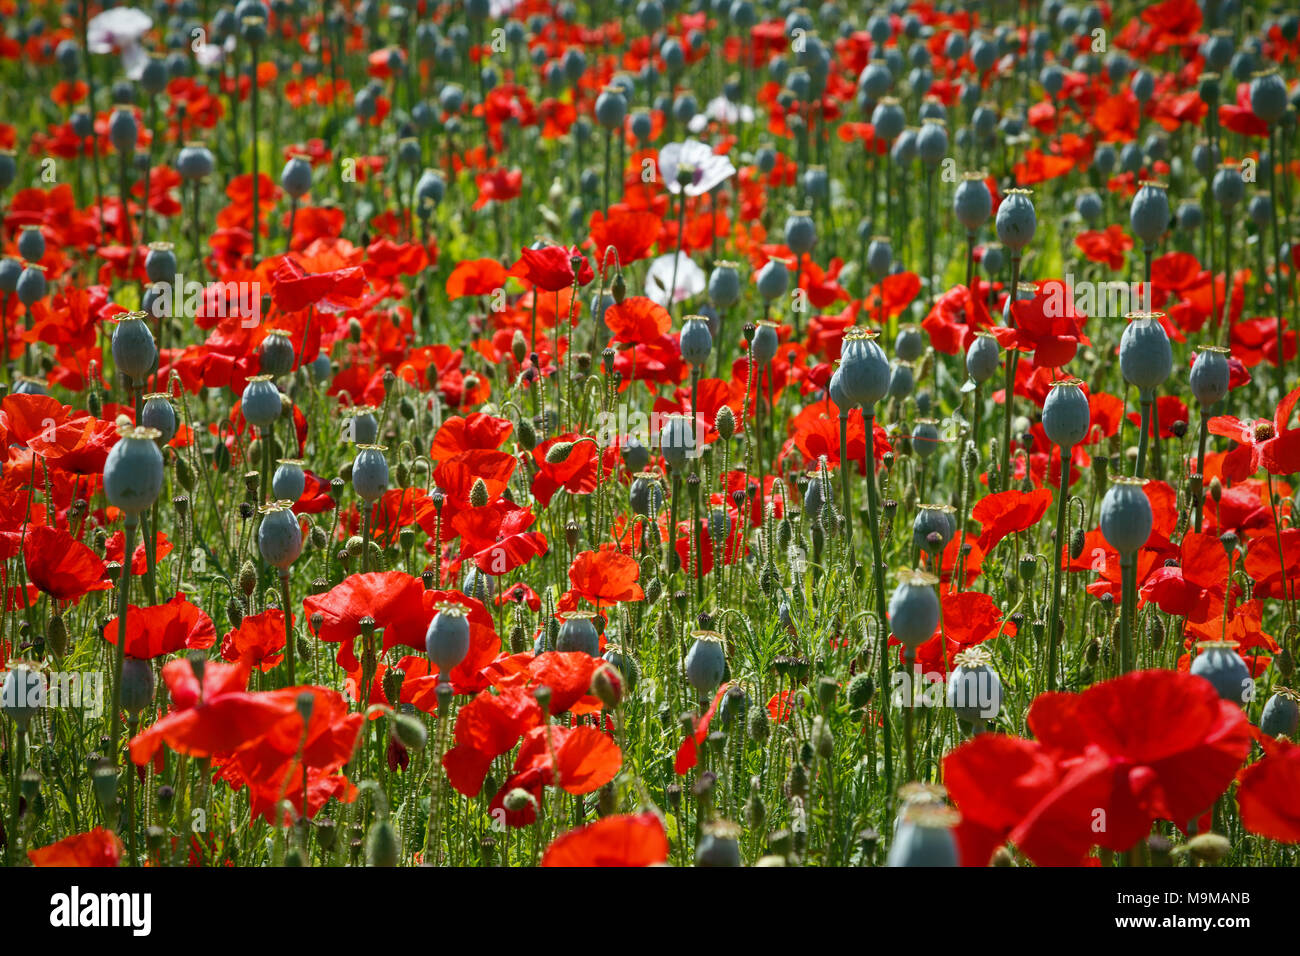 Ein gemischtes Feld der Mohnblumen, die Opiumernte meist verloren hat Es blütenblätter verlassen die großen Samenkapseln reif für die Ernte, während die roten werden in Ful Stockfoto